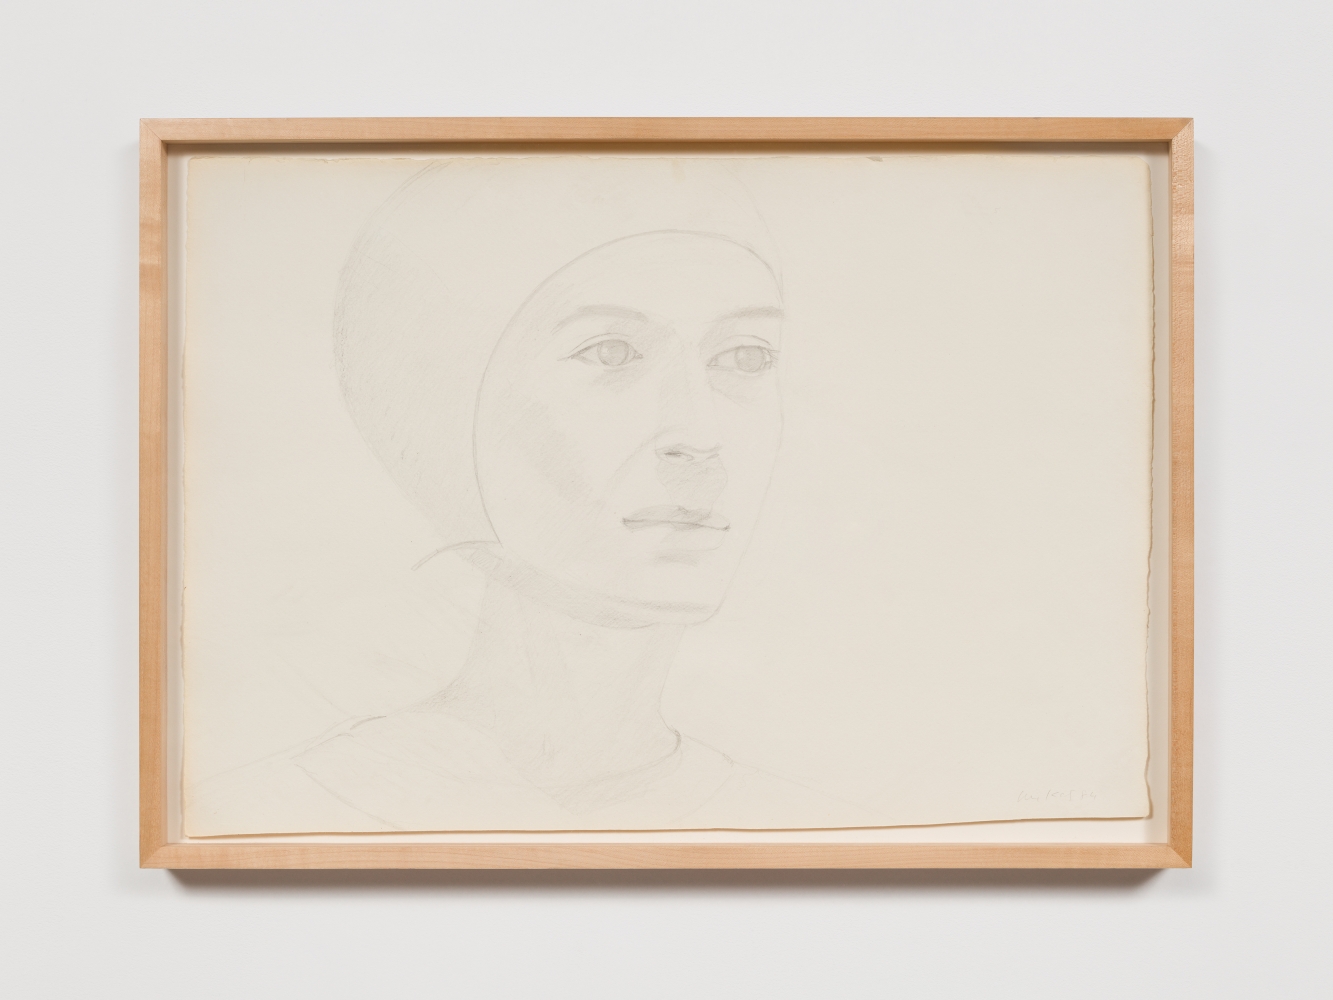 Alex Katz
Bathing Cap, 1984

pencil on paper

15 3/4 x 22 1/2 in. / 40&amp;nbsp;x 57.2 cm